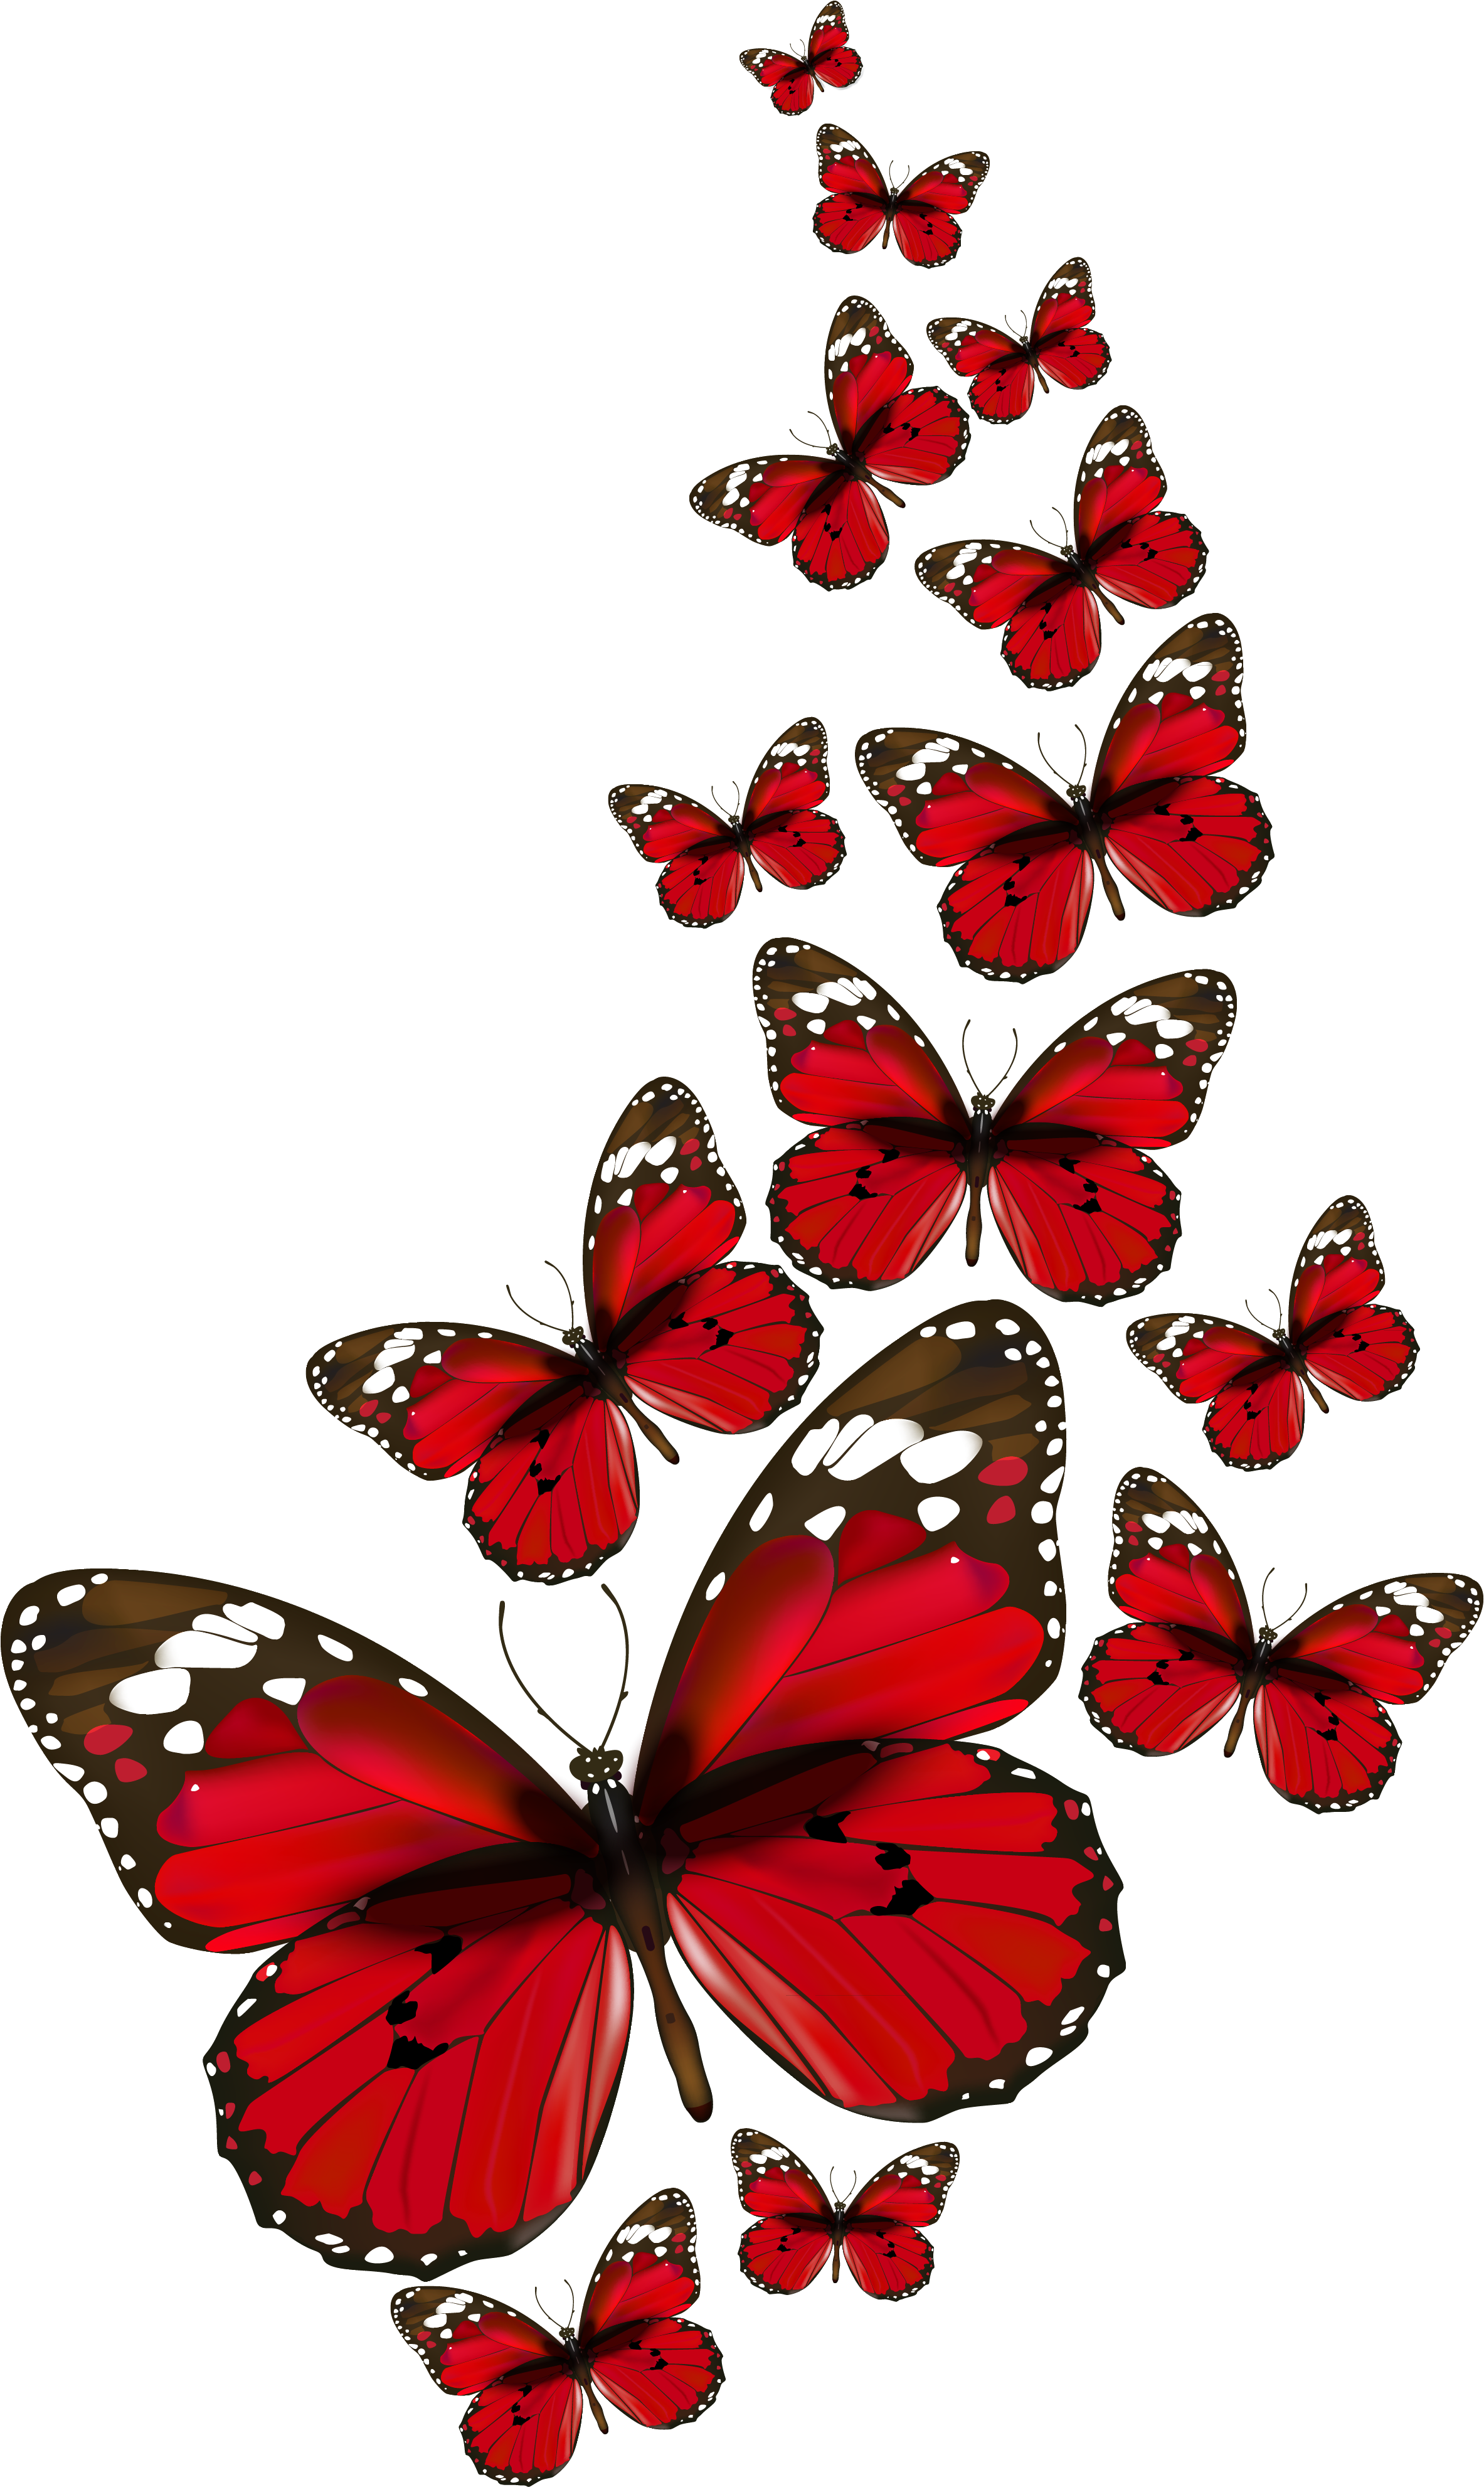 Papillons - Red Butterflies Png (2496x4129)